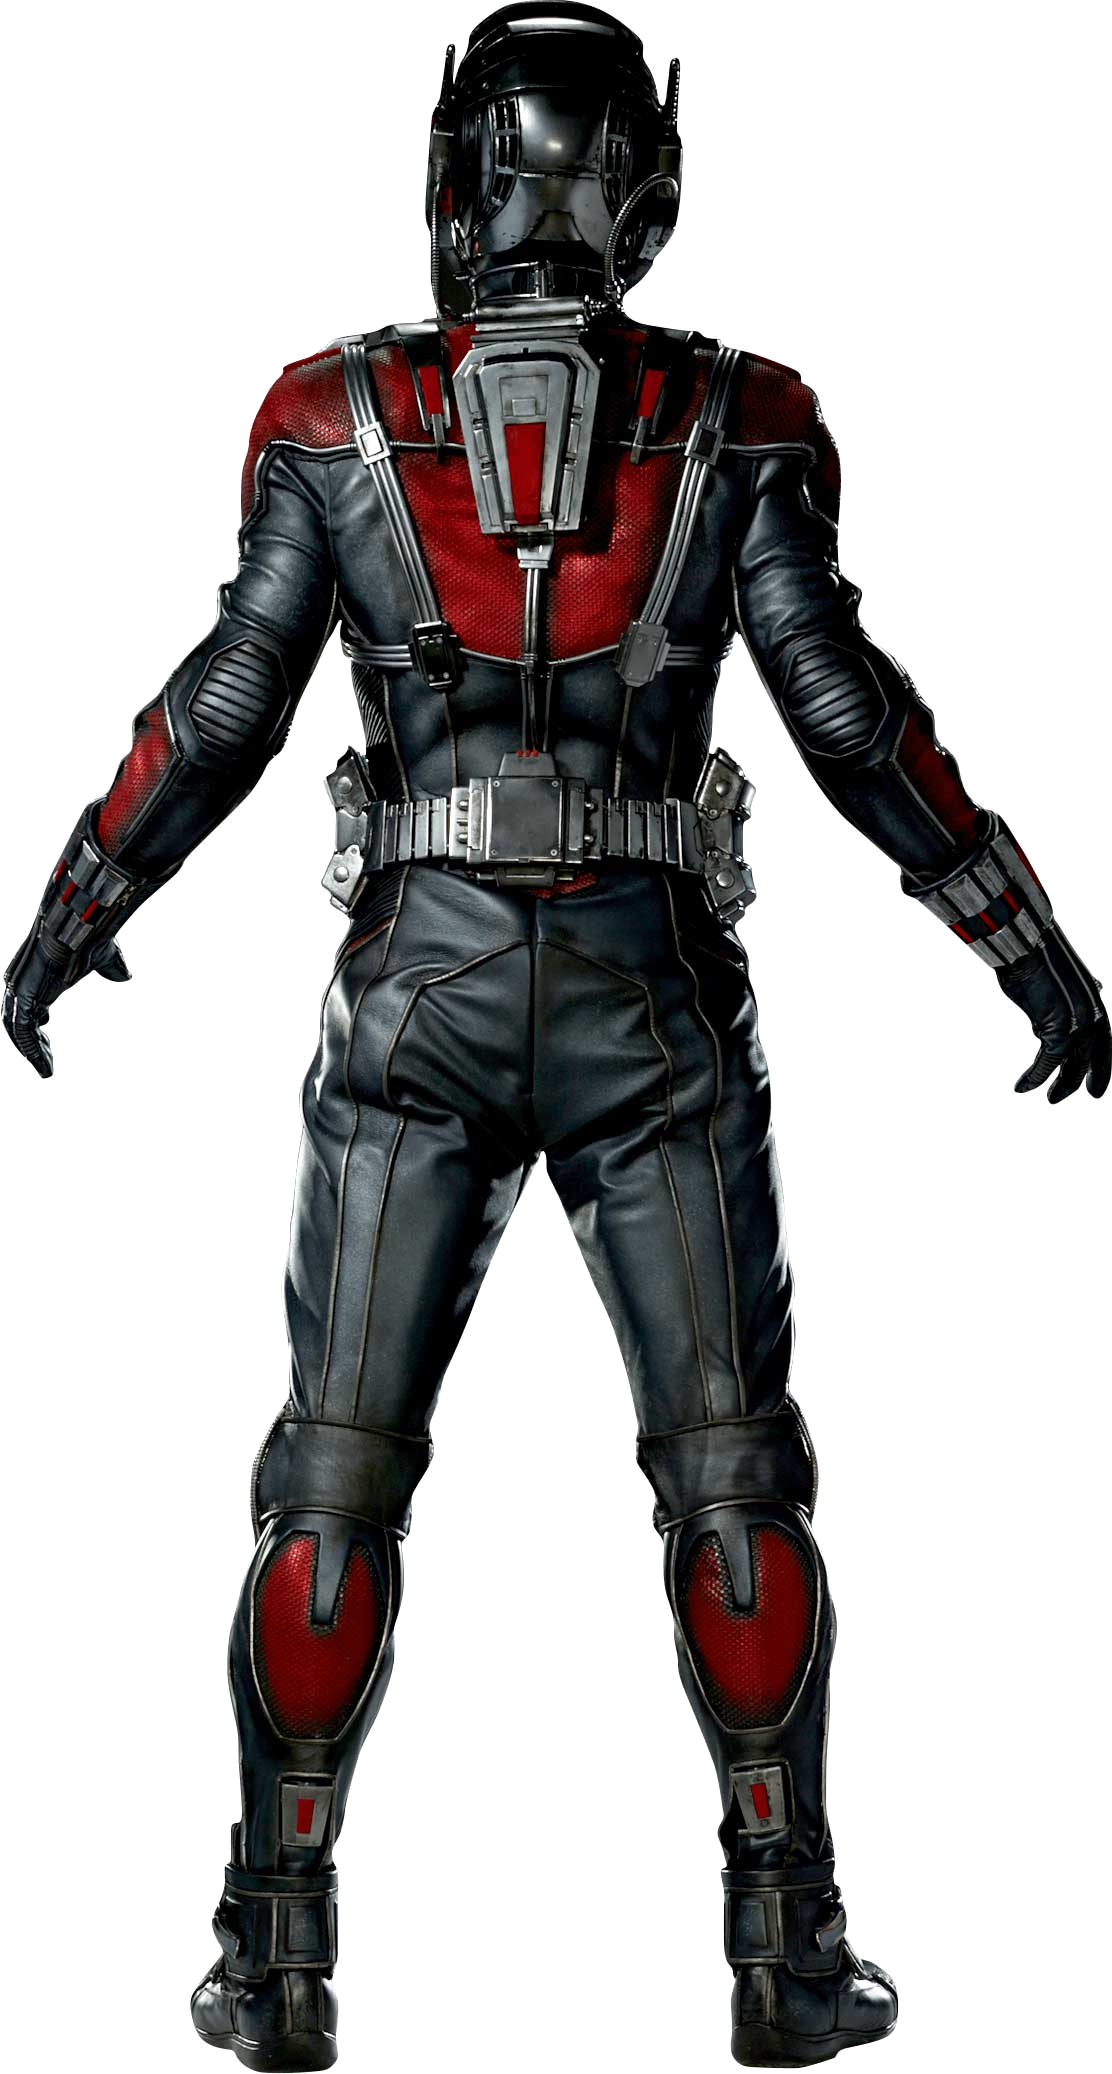 Ant-Man Suit Front.png